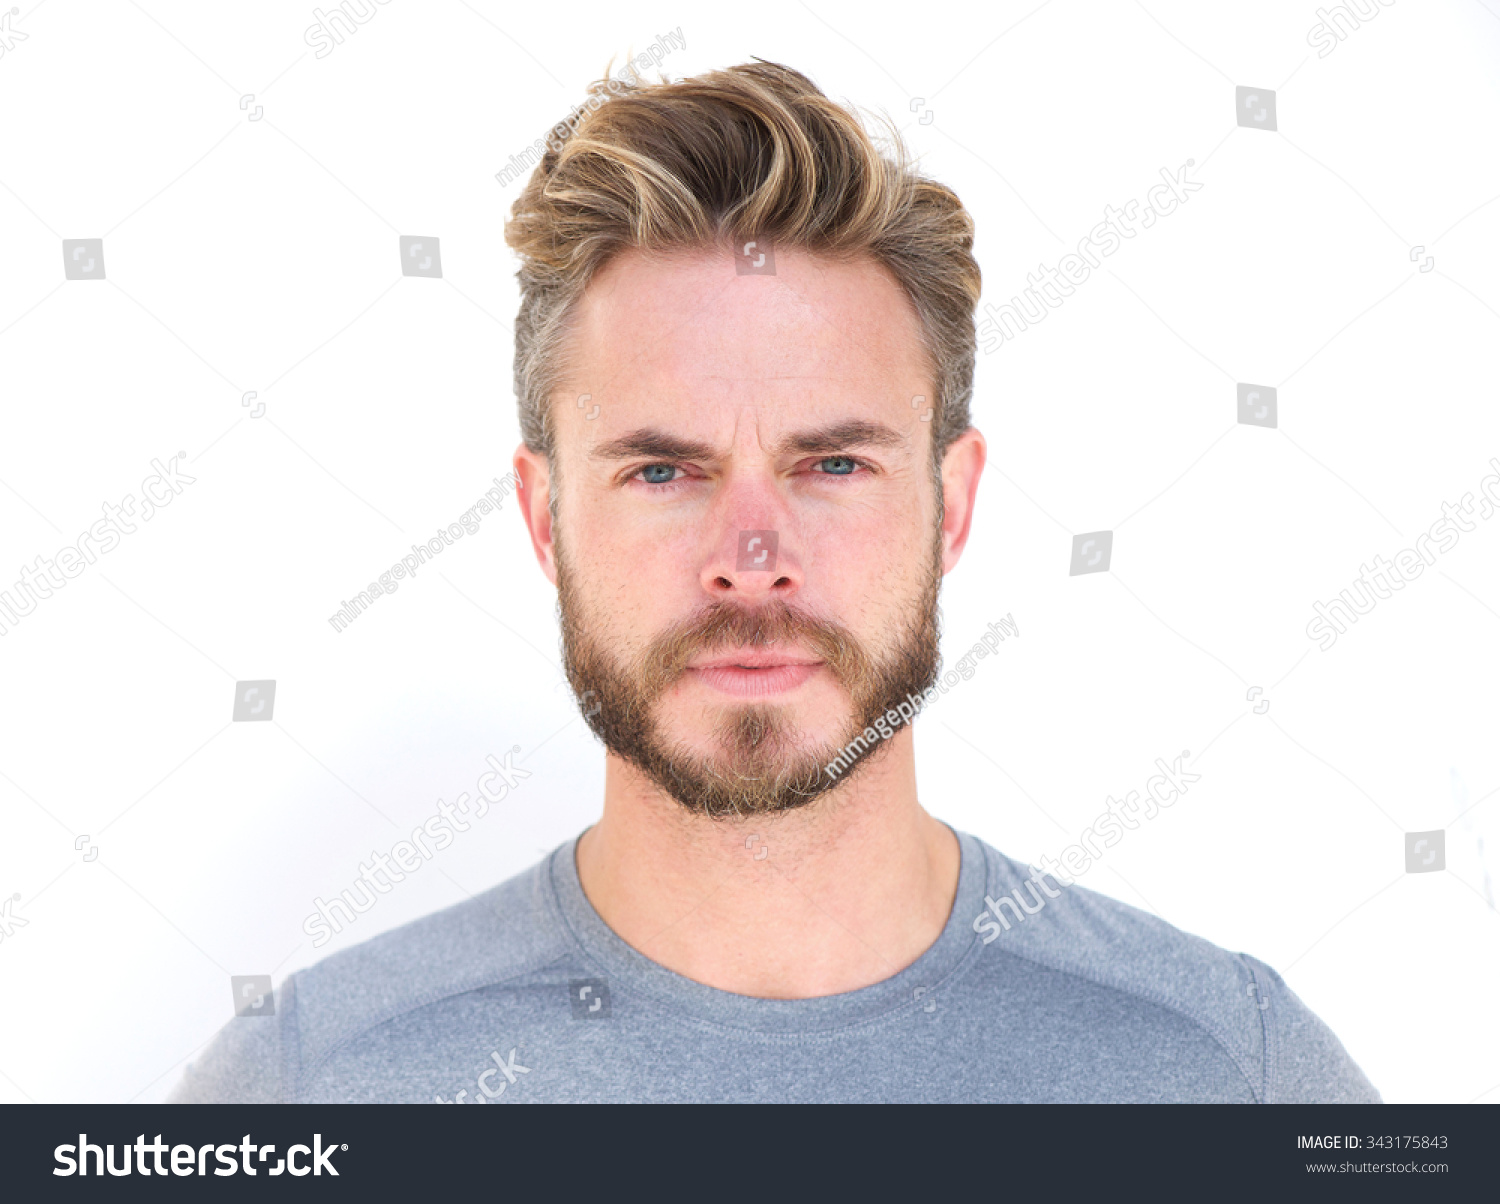 Blonde Beard Styles for Men - wide 7